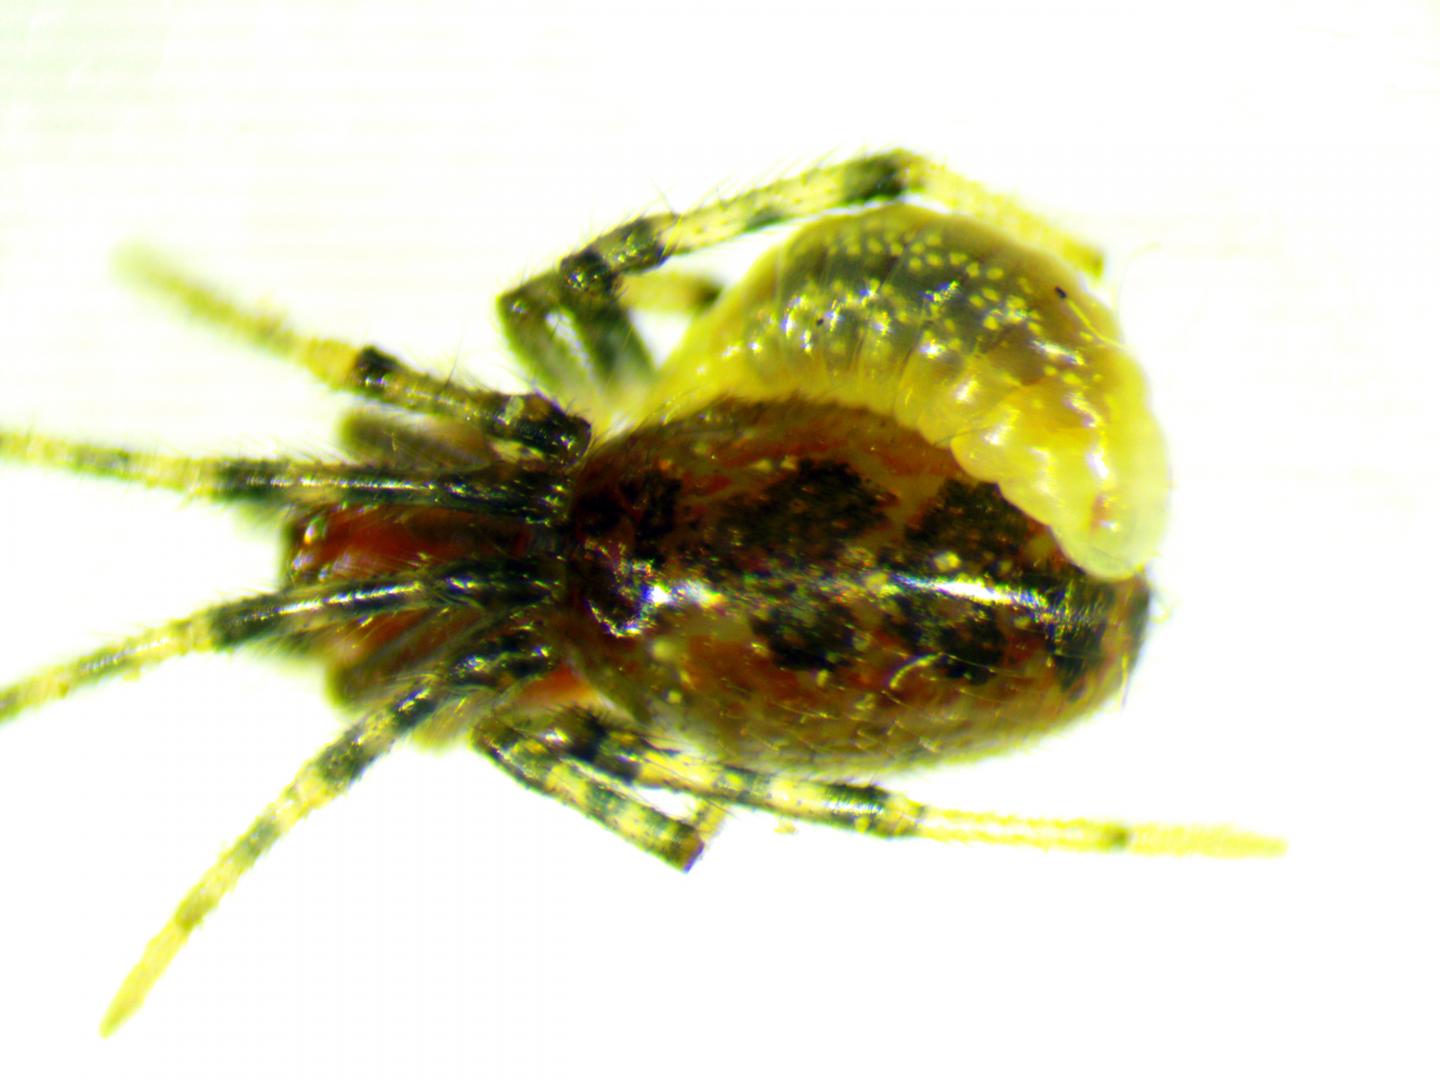 Wasp Larva Attached to Spider Abdomen